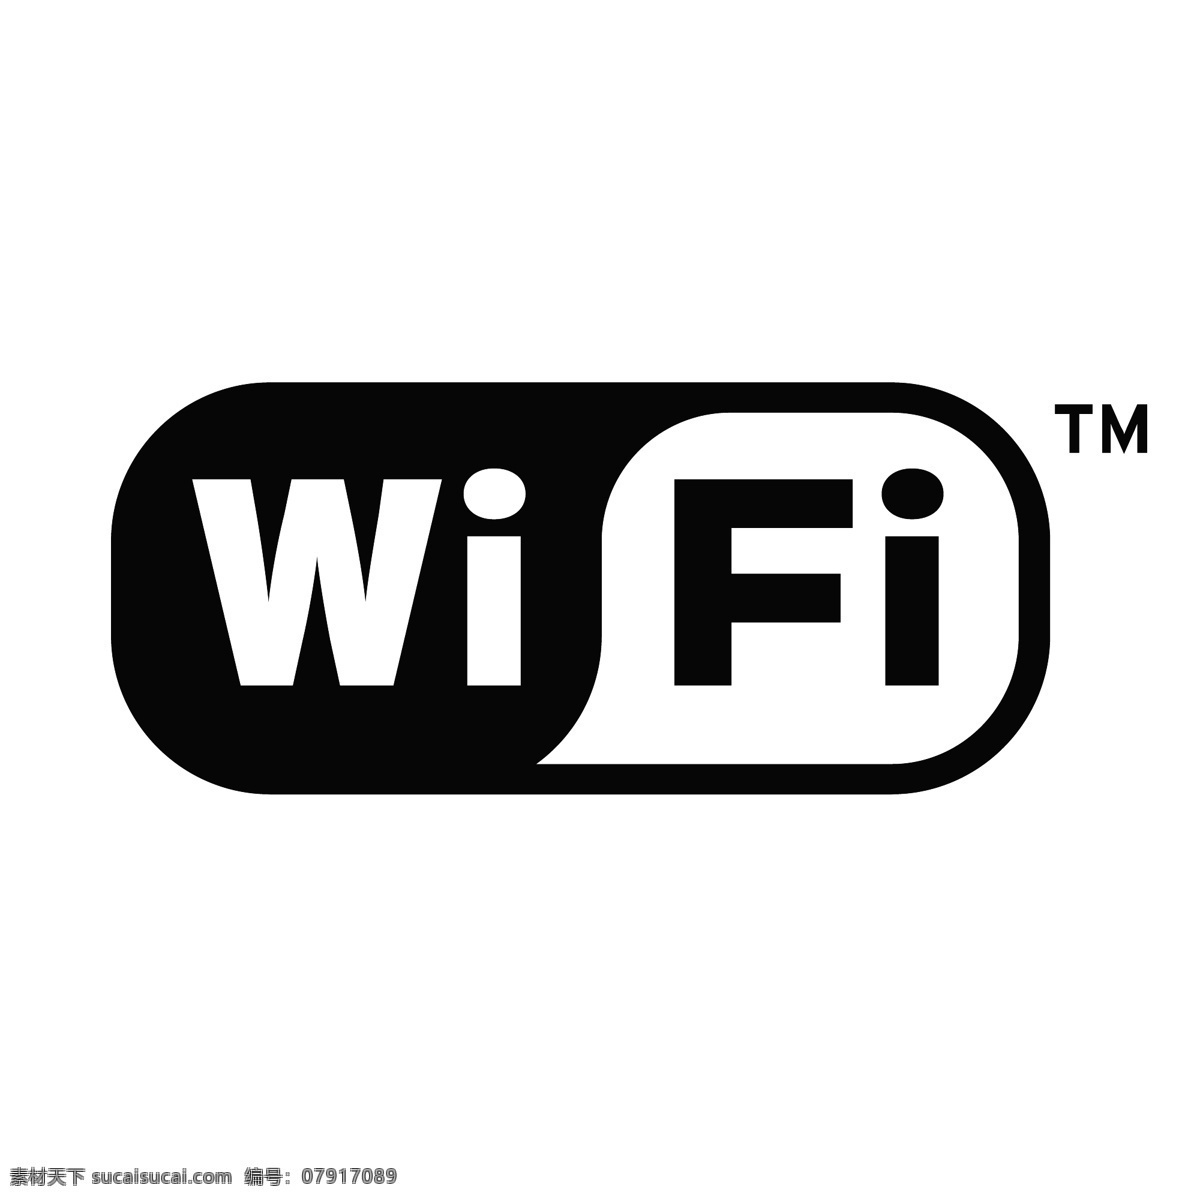 wifi图标 wifi 无线网 图标 黑白色 公共标识 矢量可编辑 标志图标 公共标识标志